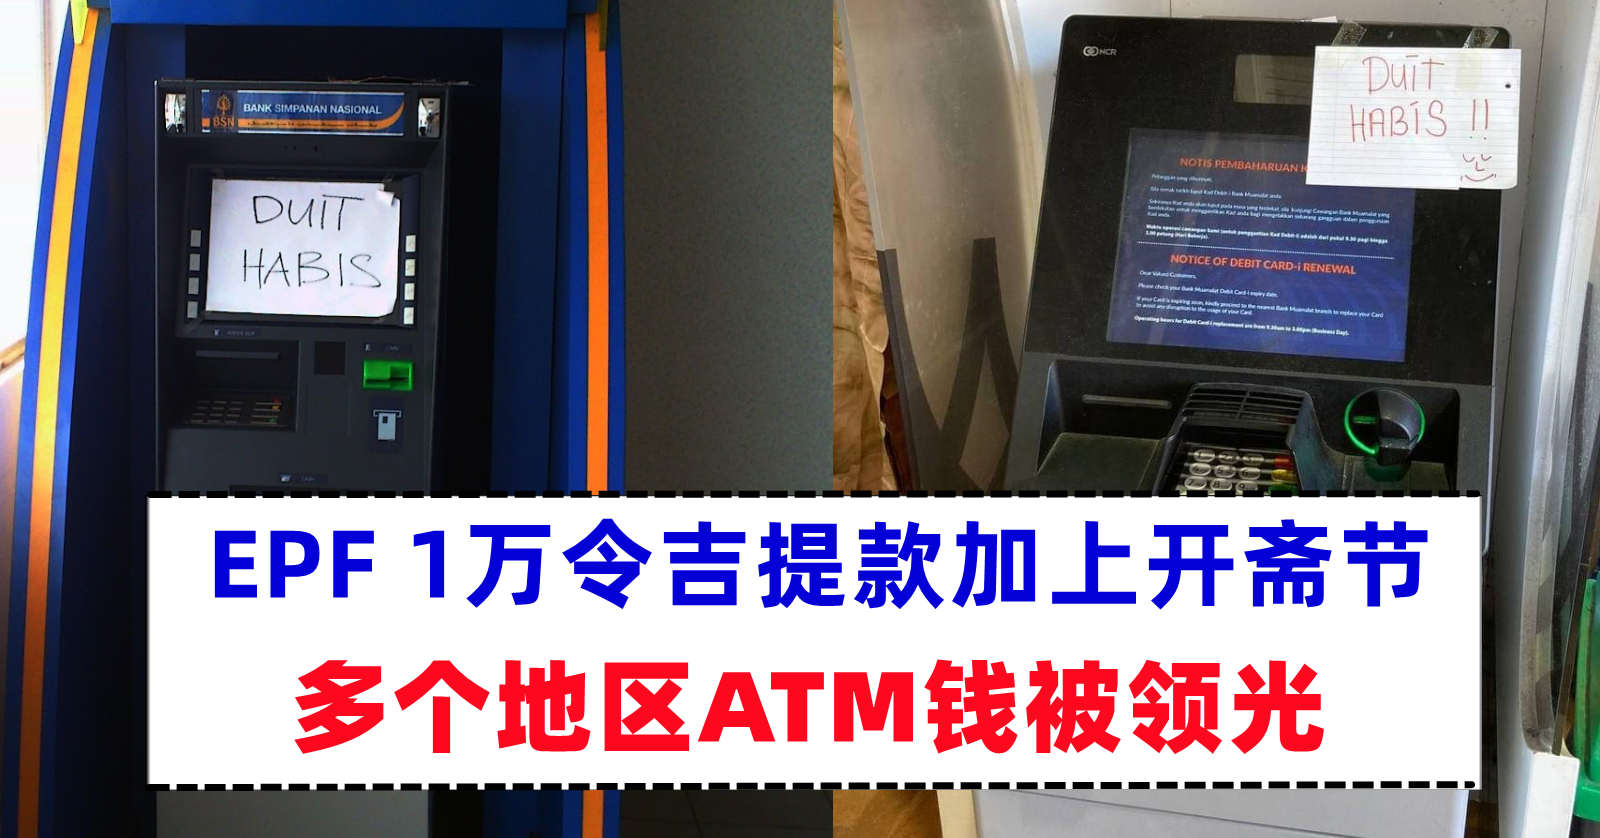 新加坡OCBC提款机推出刷脸提款功能，到ATM提款不用再携带银行卡